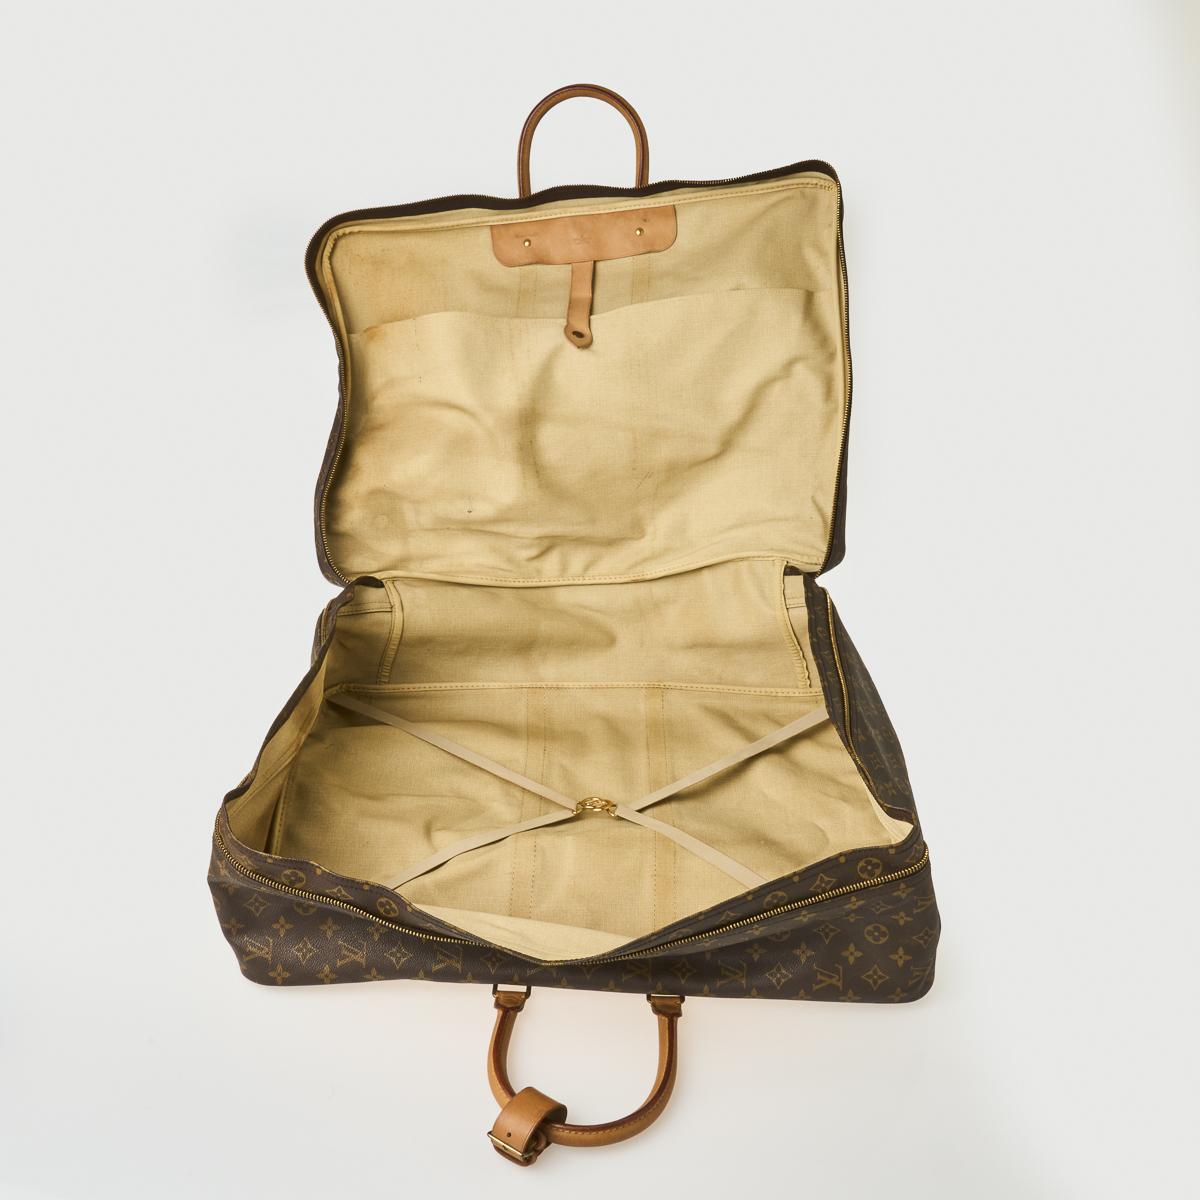 Sold at Auction: A Louis Vuitton monogram canvas suit carrier 60